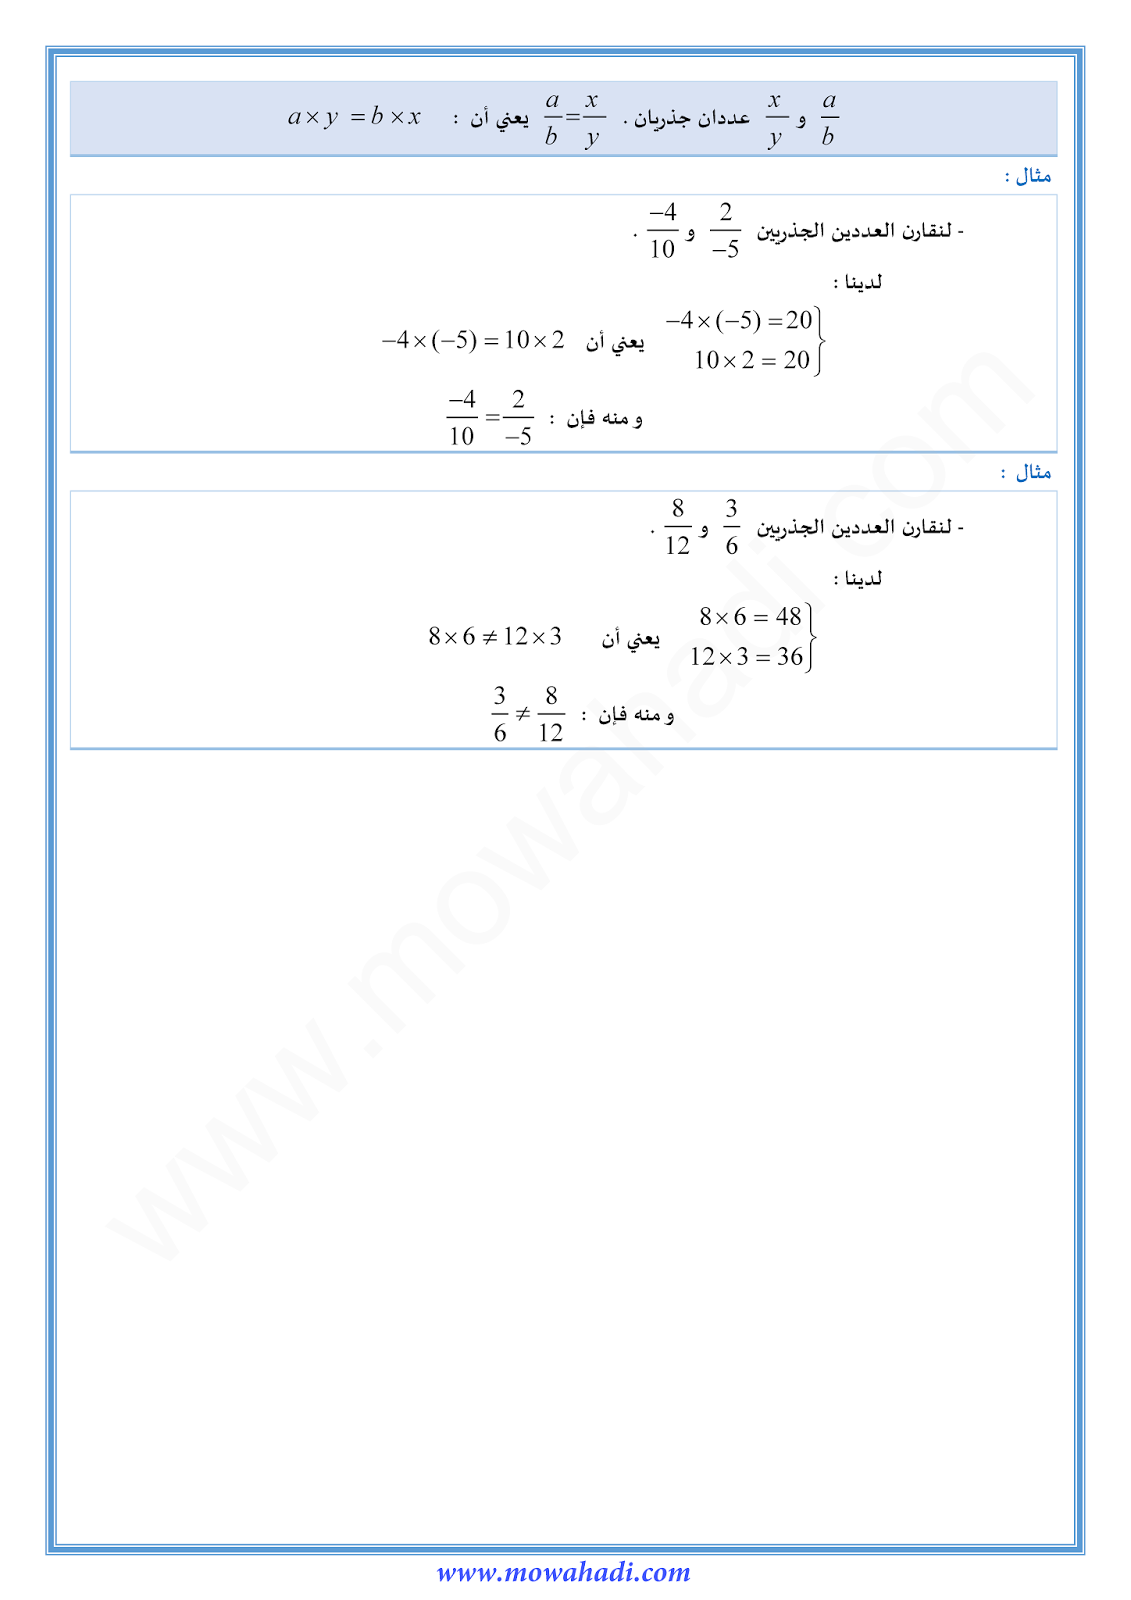 تقديم الاعداد الجذرية للسنة الثانية اعدادي في مادة الرياضيات 1-cours-math2_002